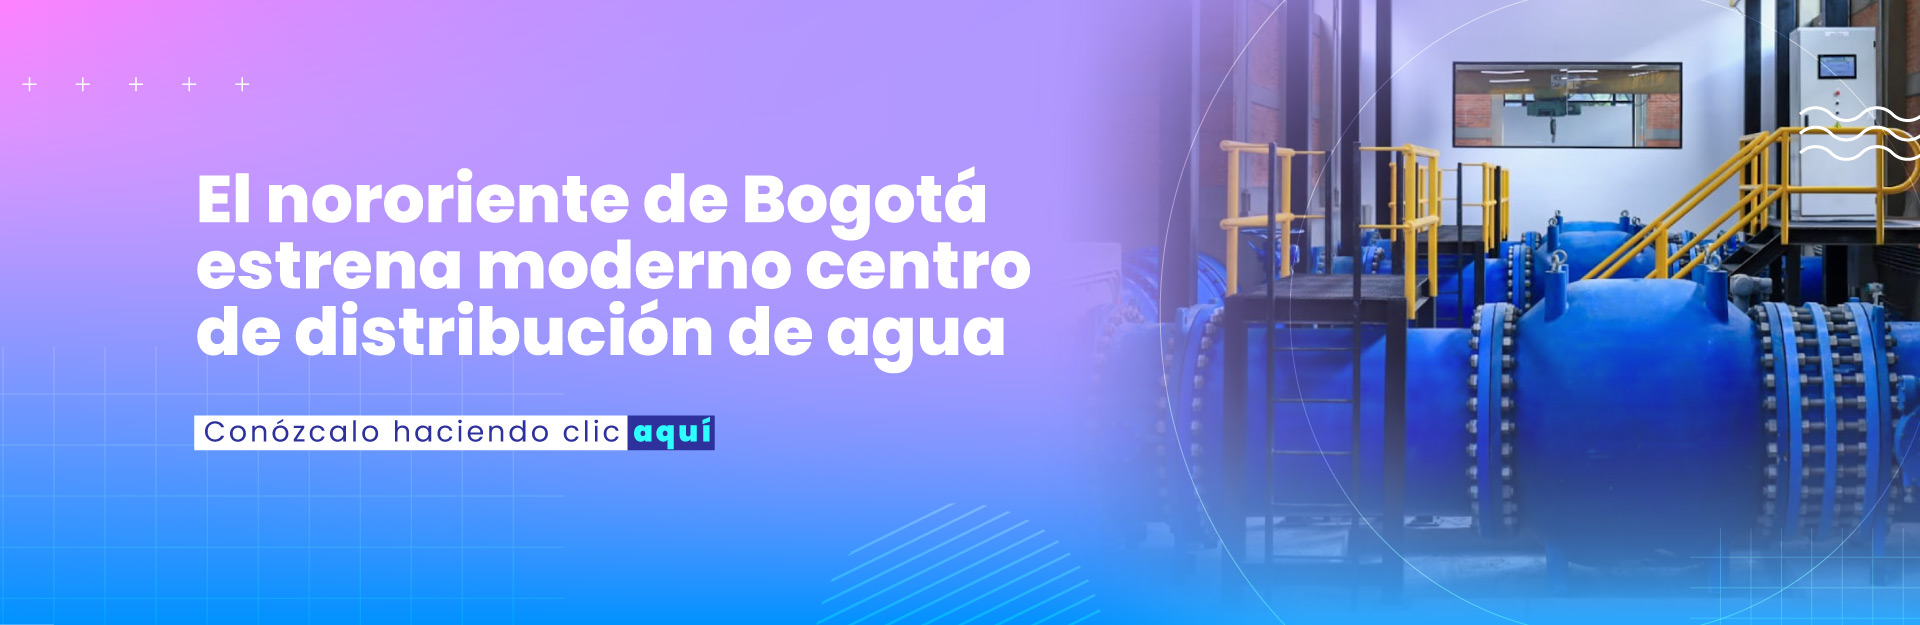 El nororiente de Bogotá estrena moderno centro de distribución de agua